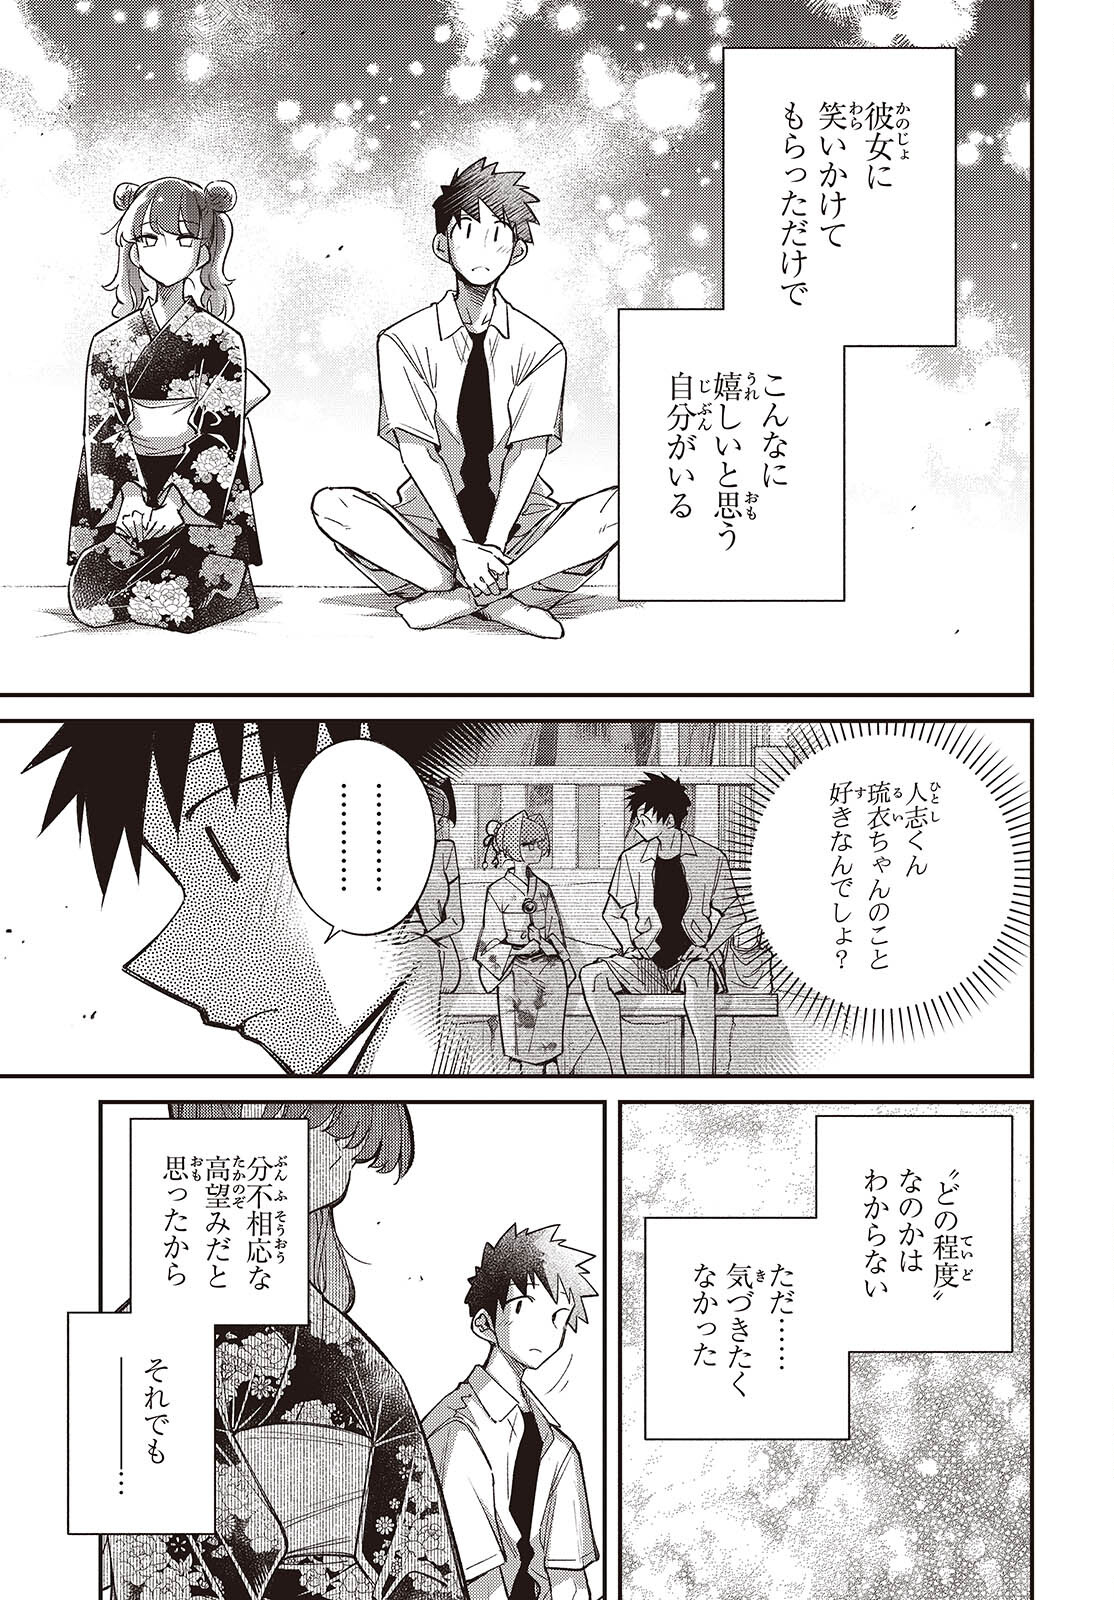 Ikimono-suki no Anima-san ni wa Honno Choppiri Doku ga aru - Chapter 10 - Page 27